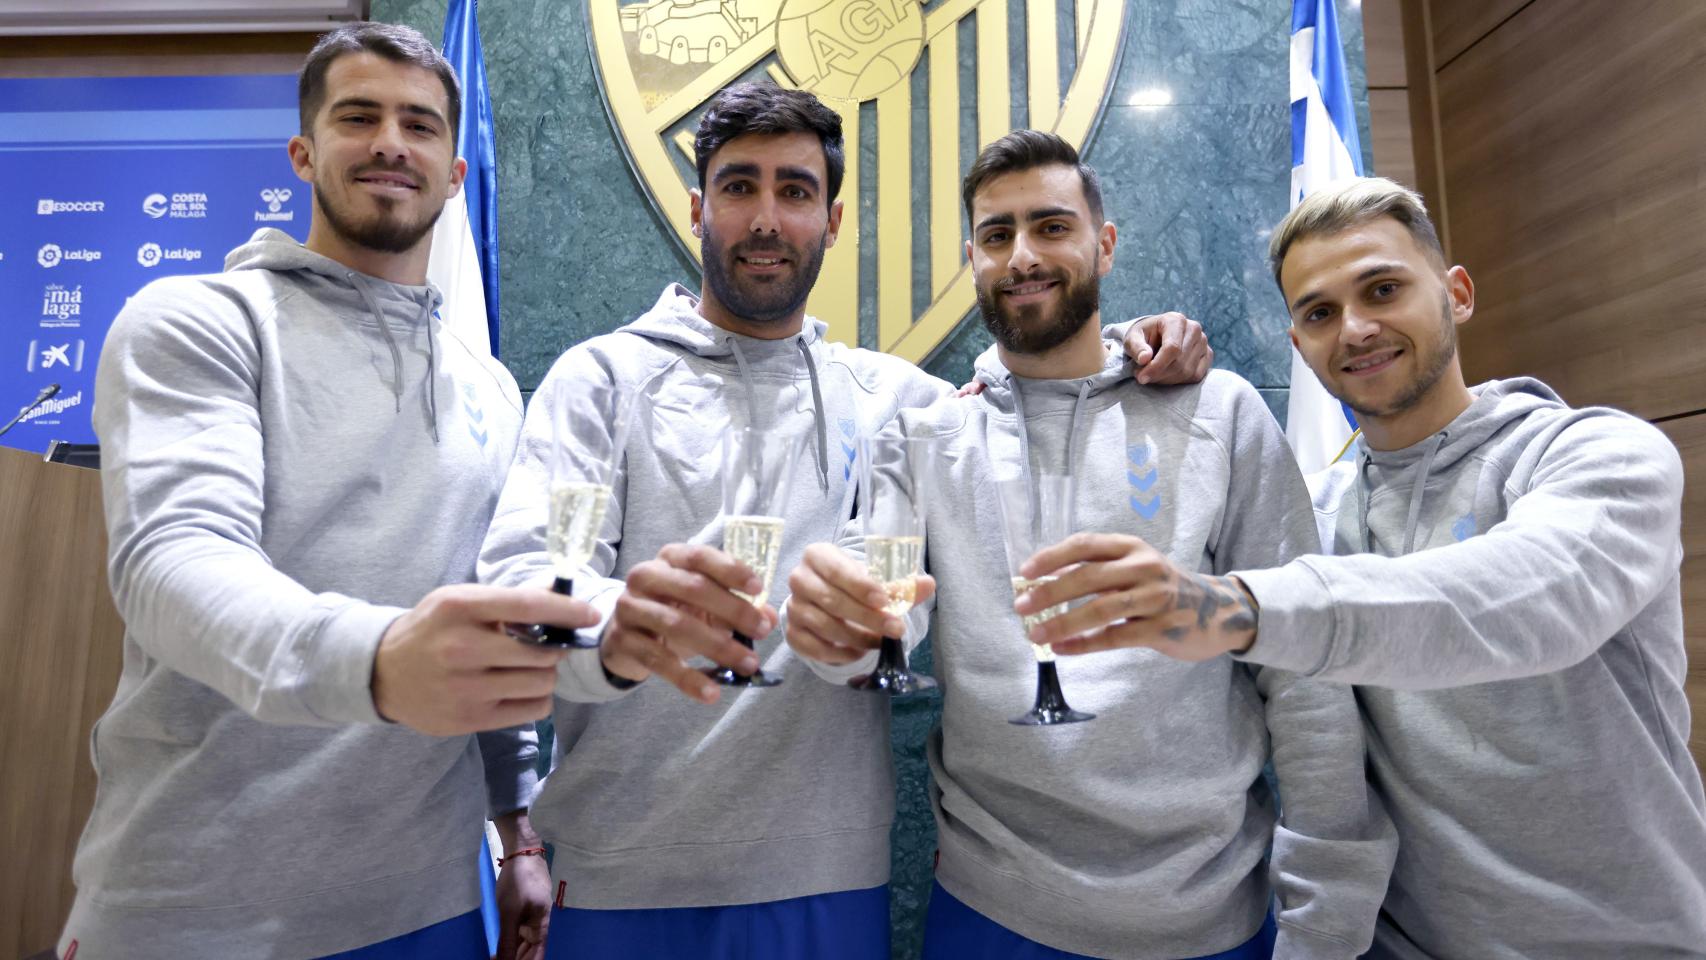 Rubén Yáñez, Escassi, Luis Muñoz y Villalba, jugadores del Málaga CF